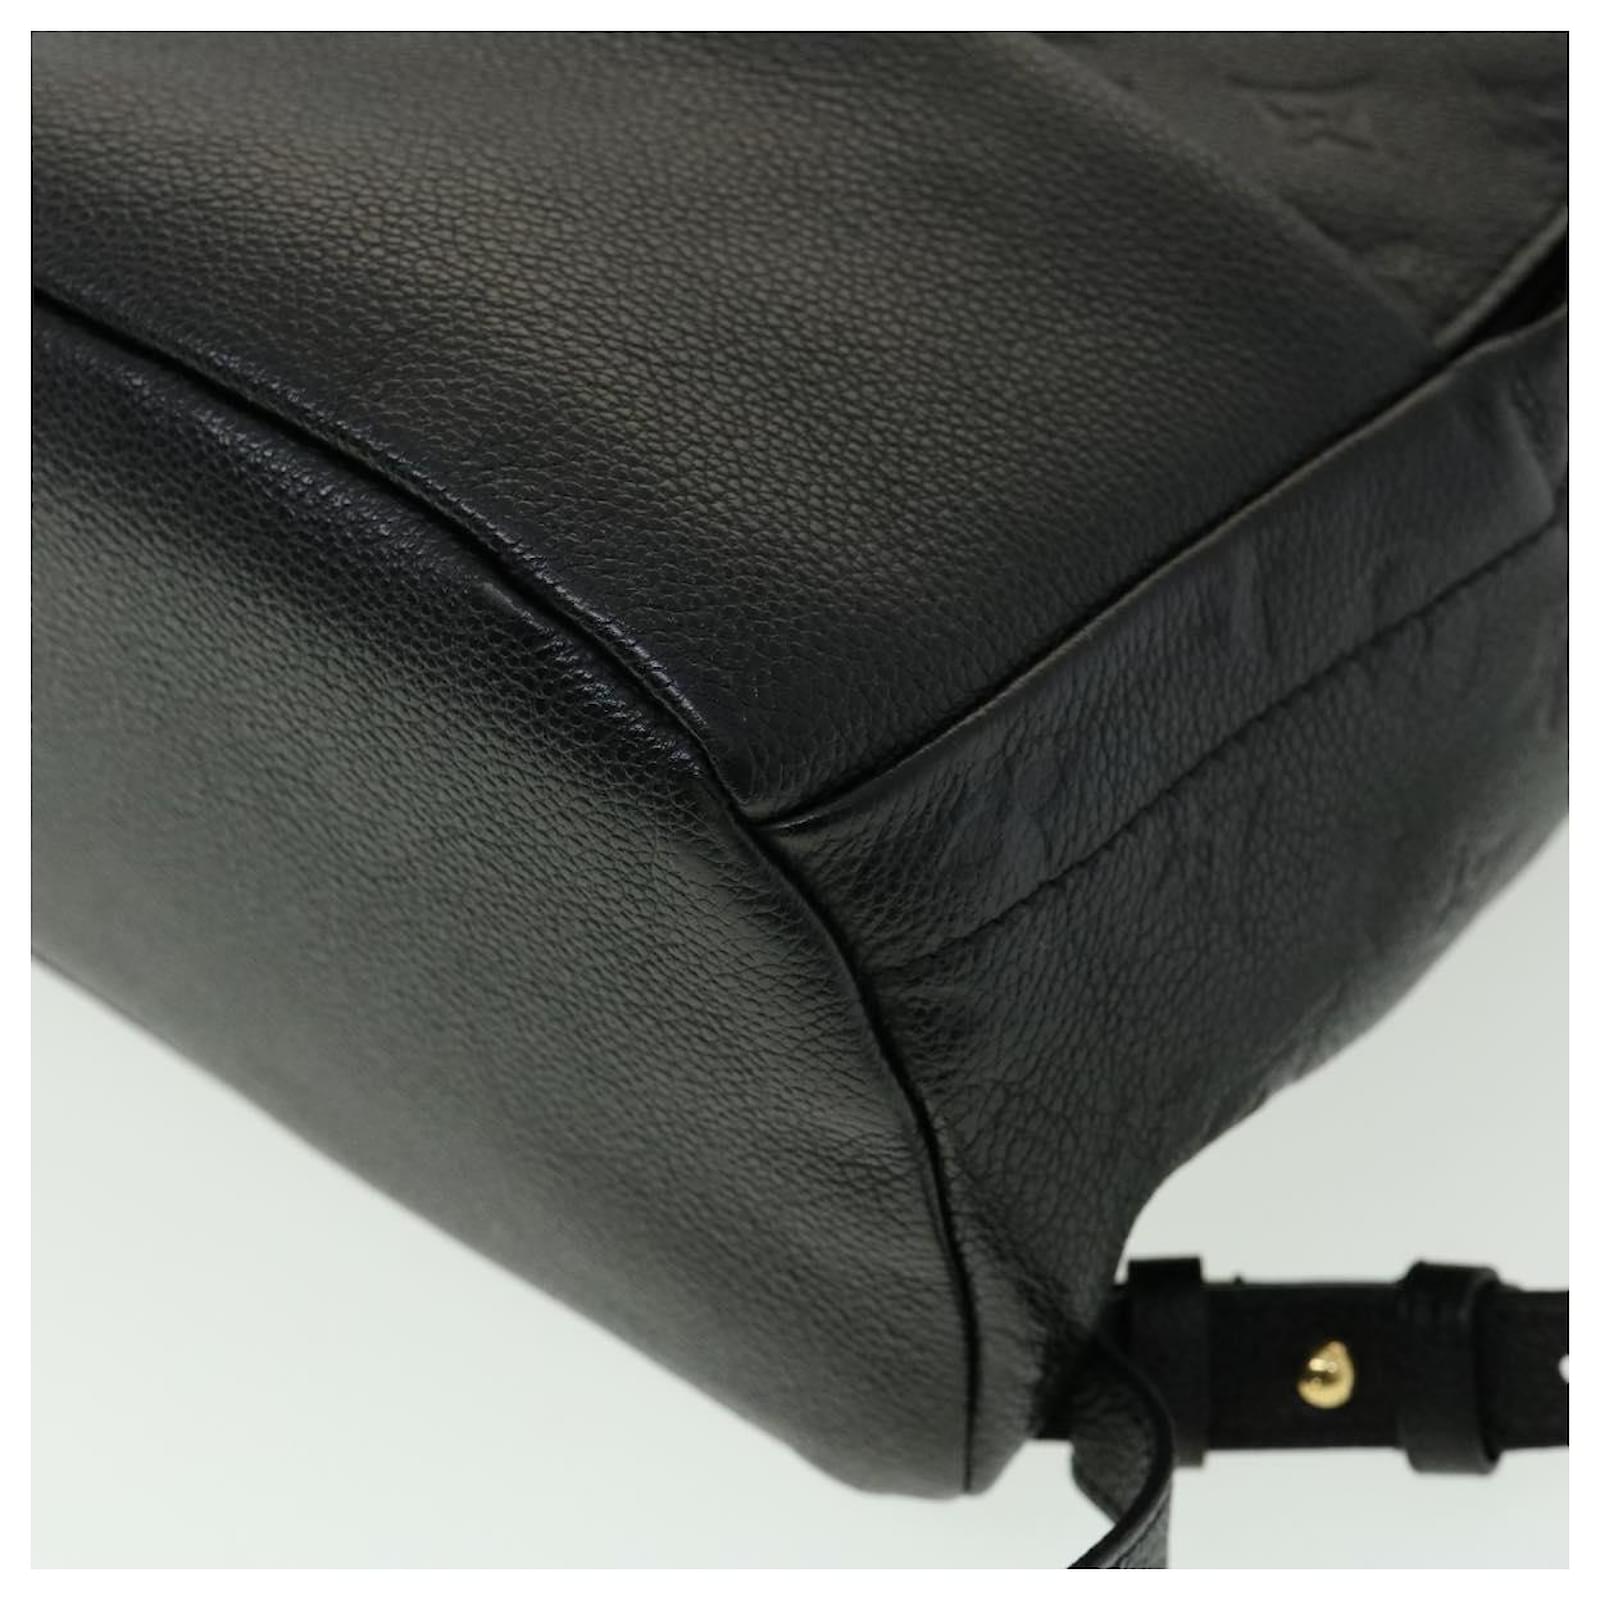 Louis Vuitton Monogram Empreinte Sorbonne Backpack Black M44016 LV